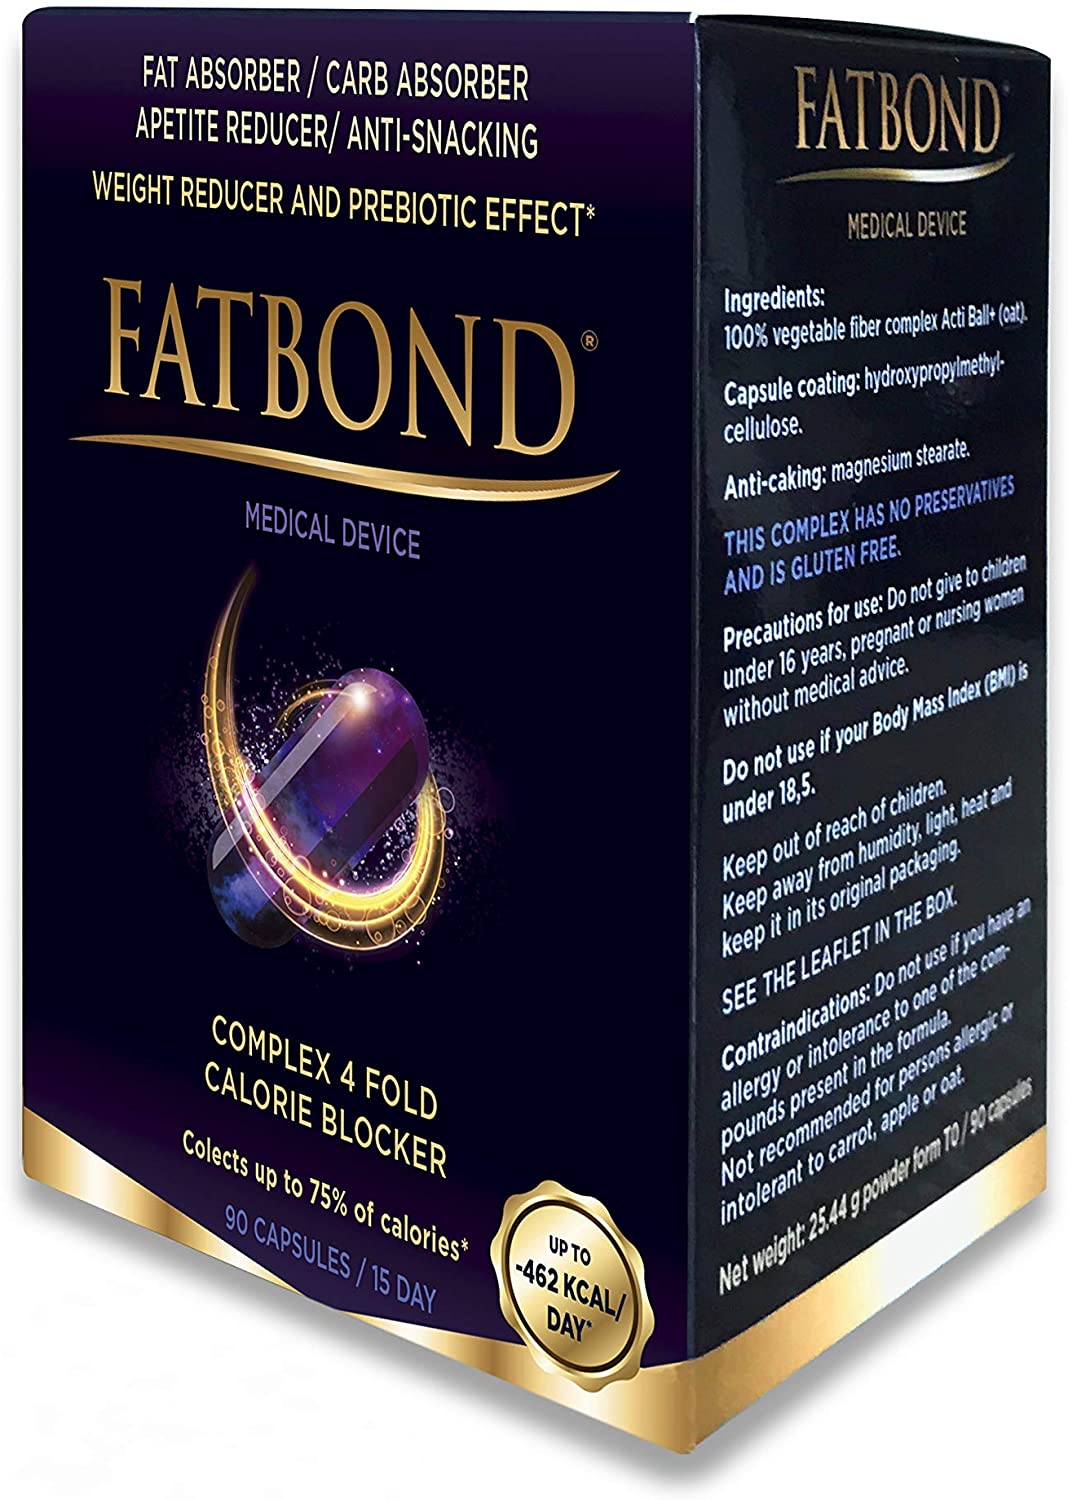 FATBOND® étvágycsökkentő, kalóriablokkoló, súlycsökkentő, prebiotikus rostkomplex